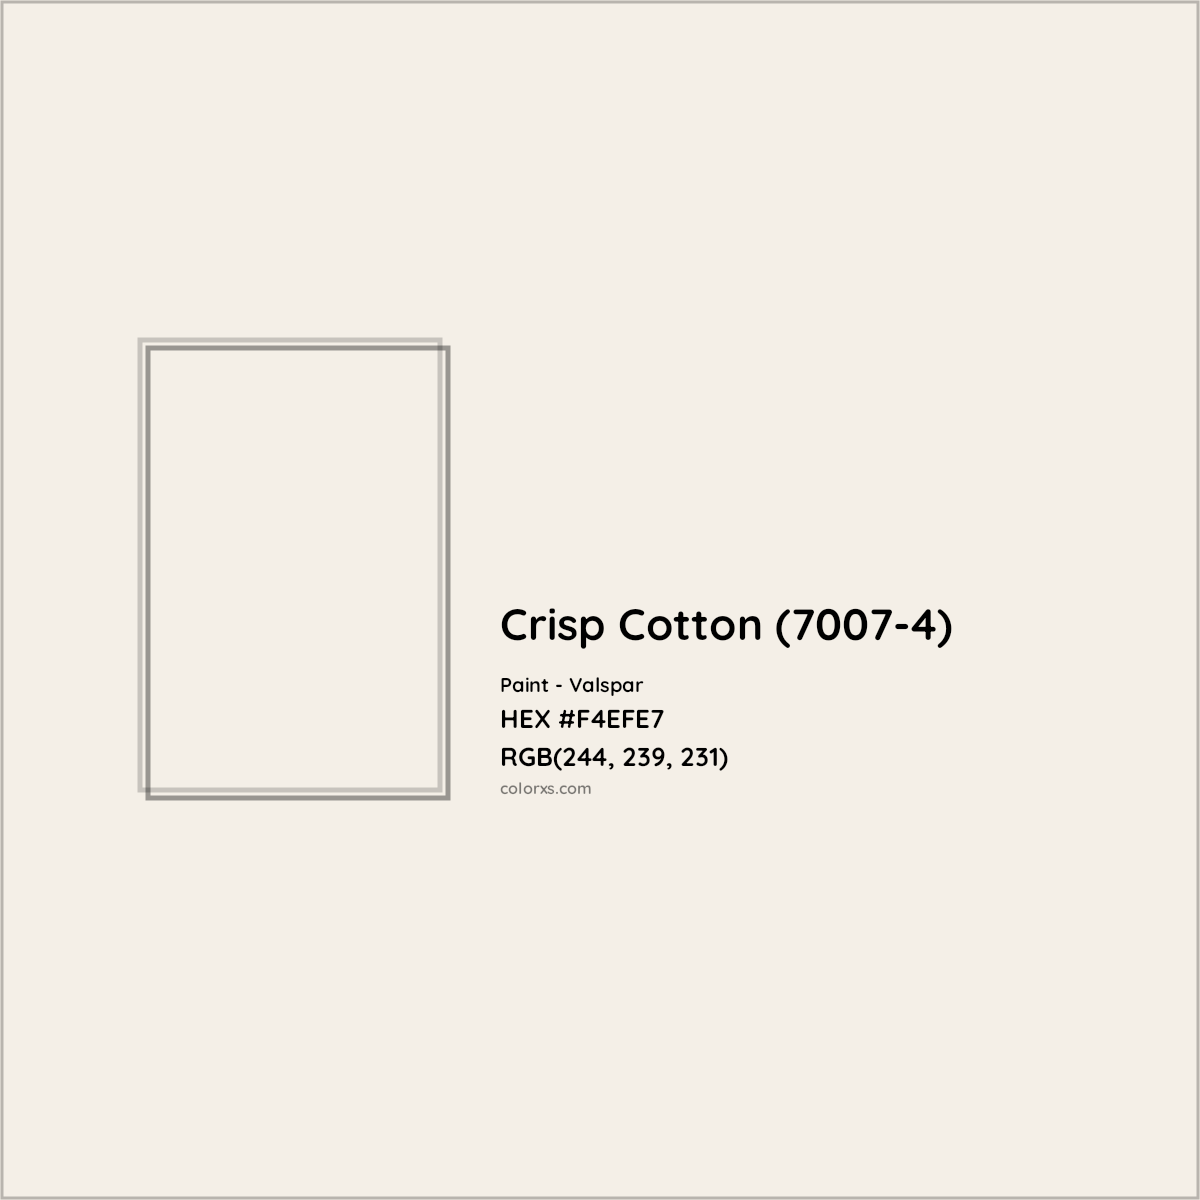 HEX #F4EFE7 Crisp Cotton (7007-4) Paint Valspar - Color Code